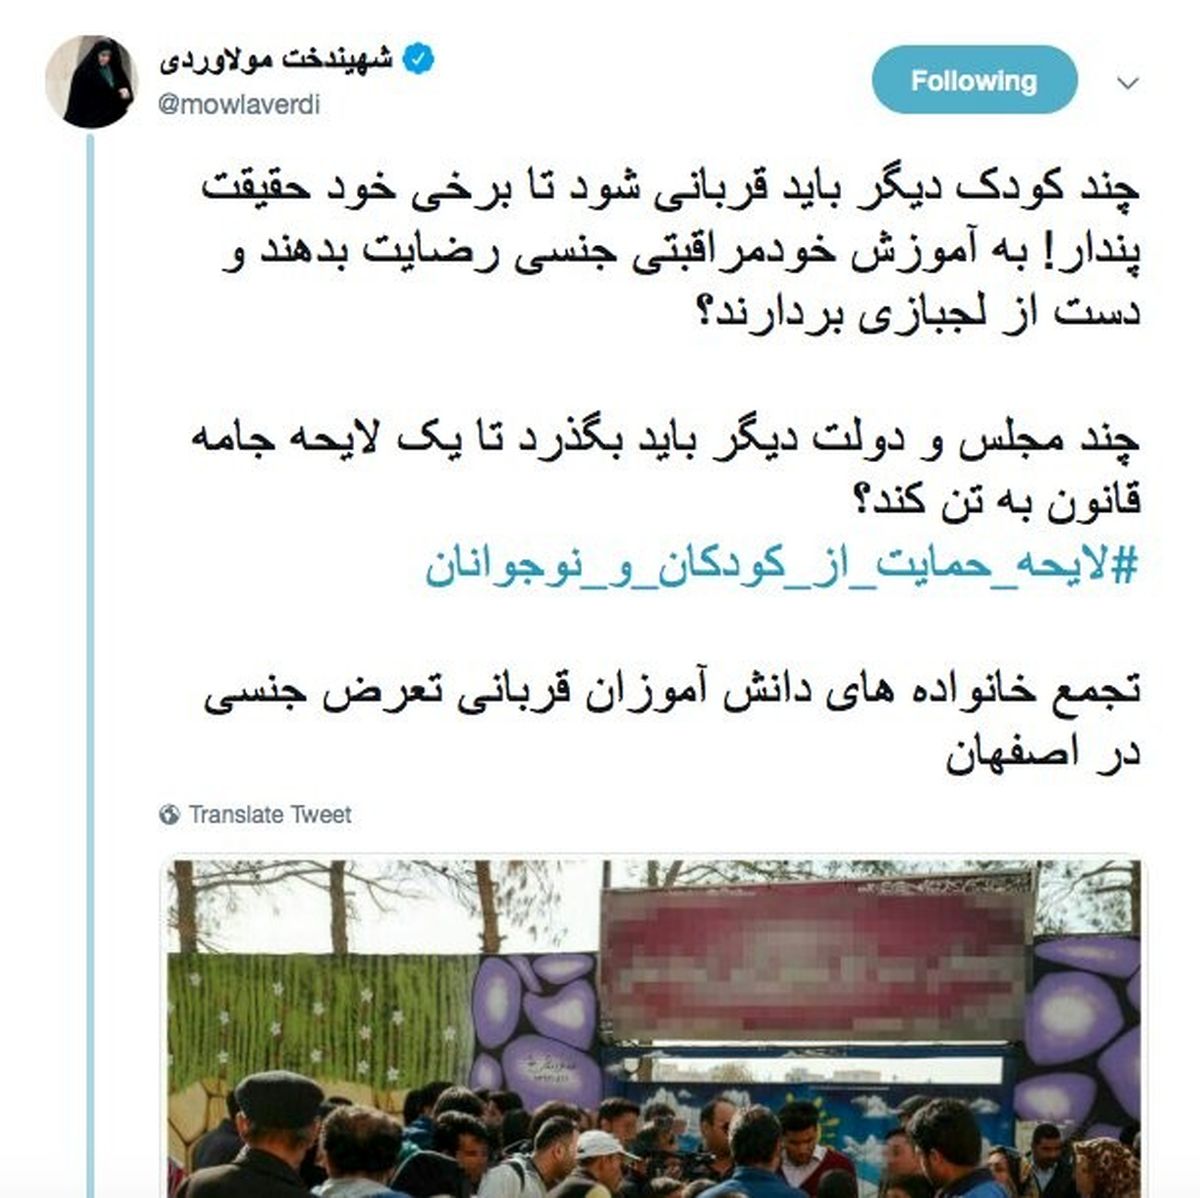 واکنش صریح مولاوردی به ماجرای تجاوز در مدرسه پسرانه اصفهان